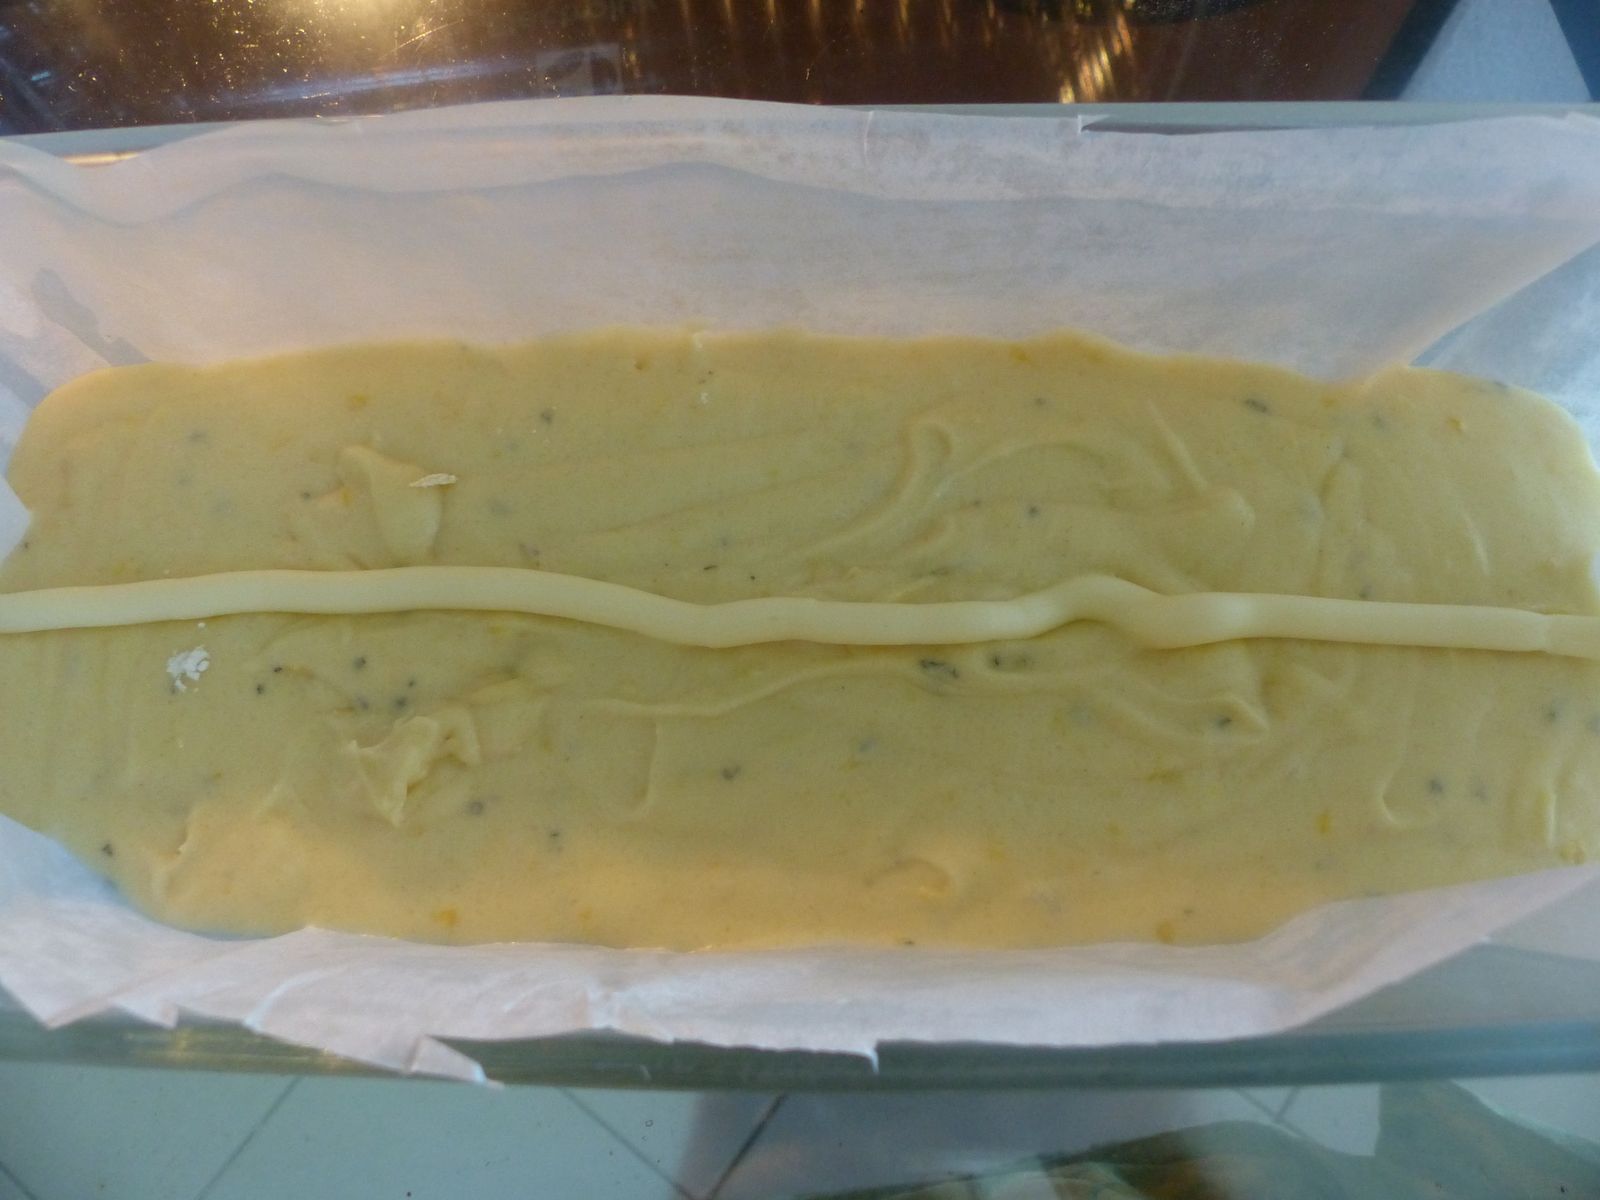 Première photo le fameux "boudin" de beurre au milieu...Vous ne verrez le cake cuit qu'en morceaux, prêts pour la distribution... j'ai oublié de le prendre entier !